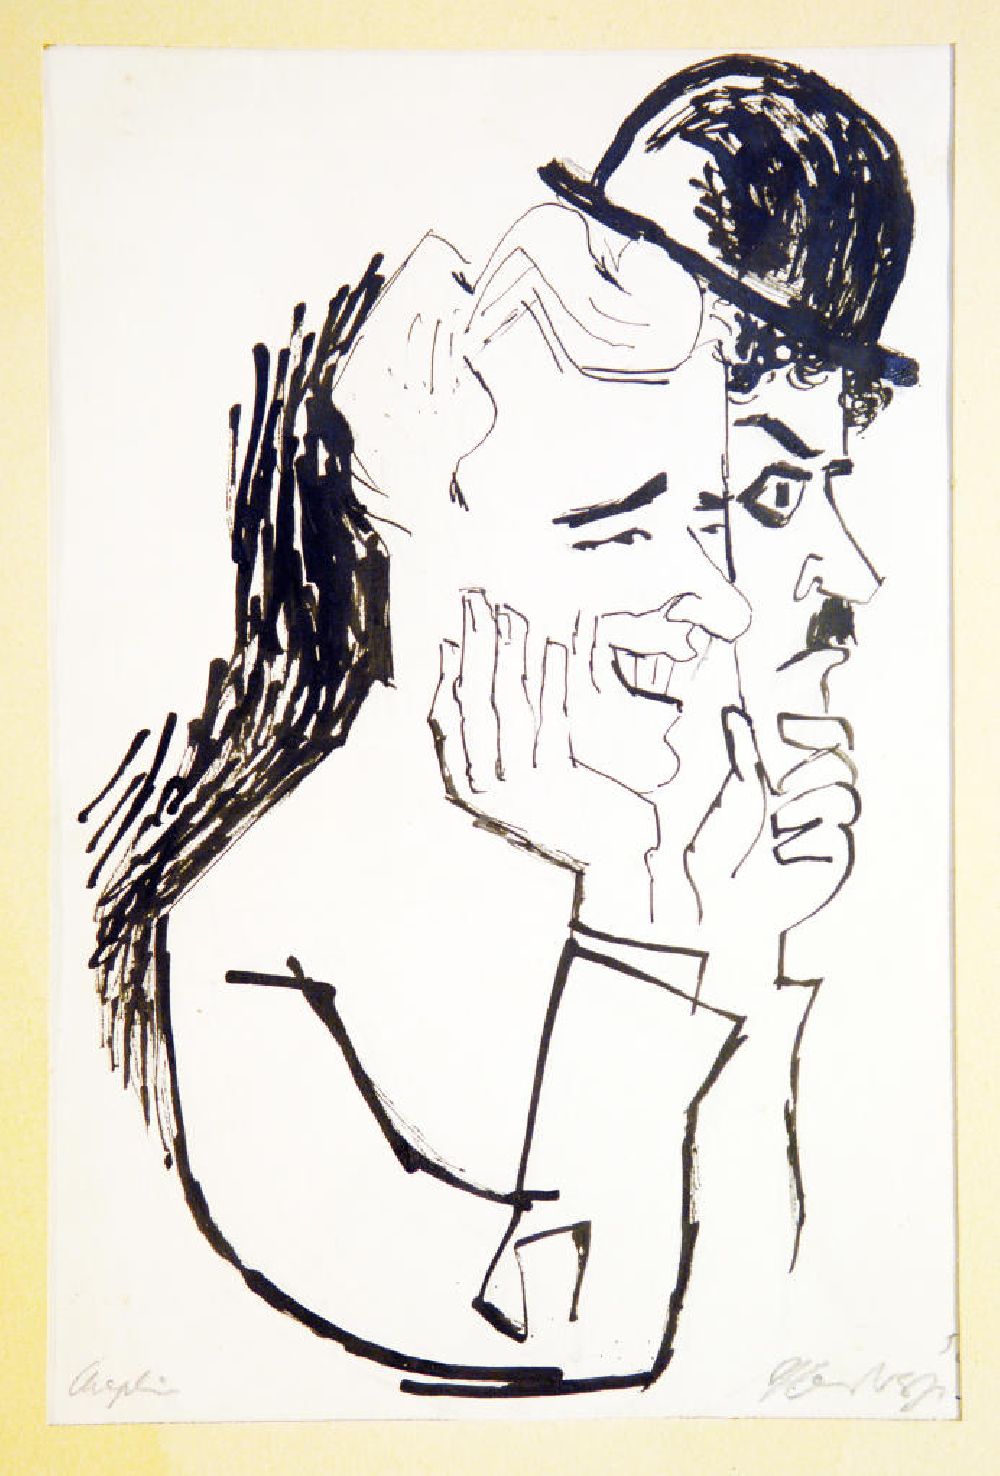 GDR picture archive: Berlin - Zeichnung von Herbert Sandberg Chaplin aus dem Jahr 1956, 18,4x28,